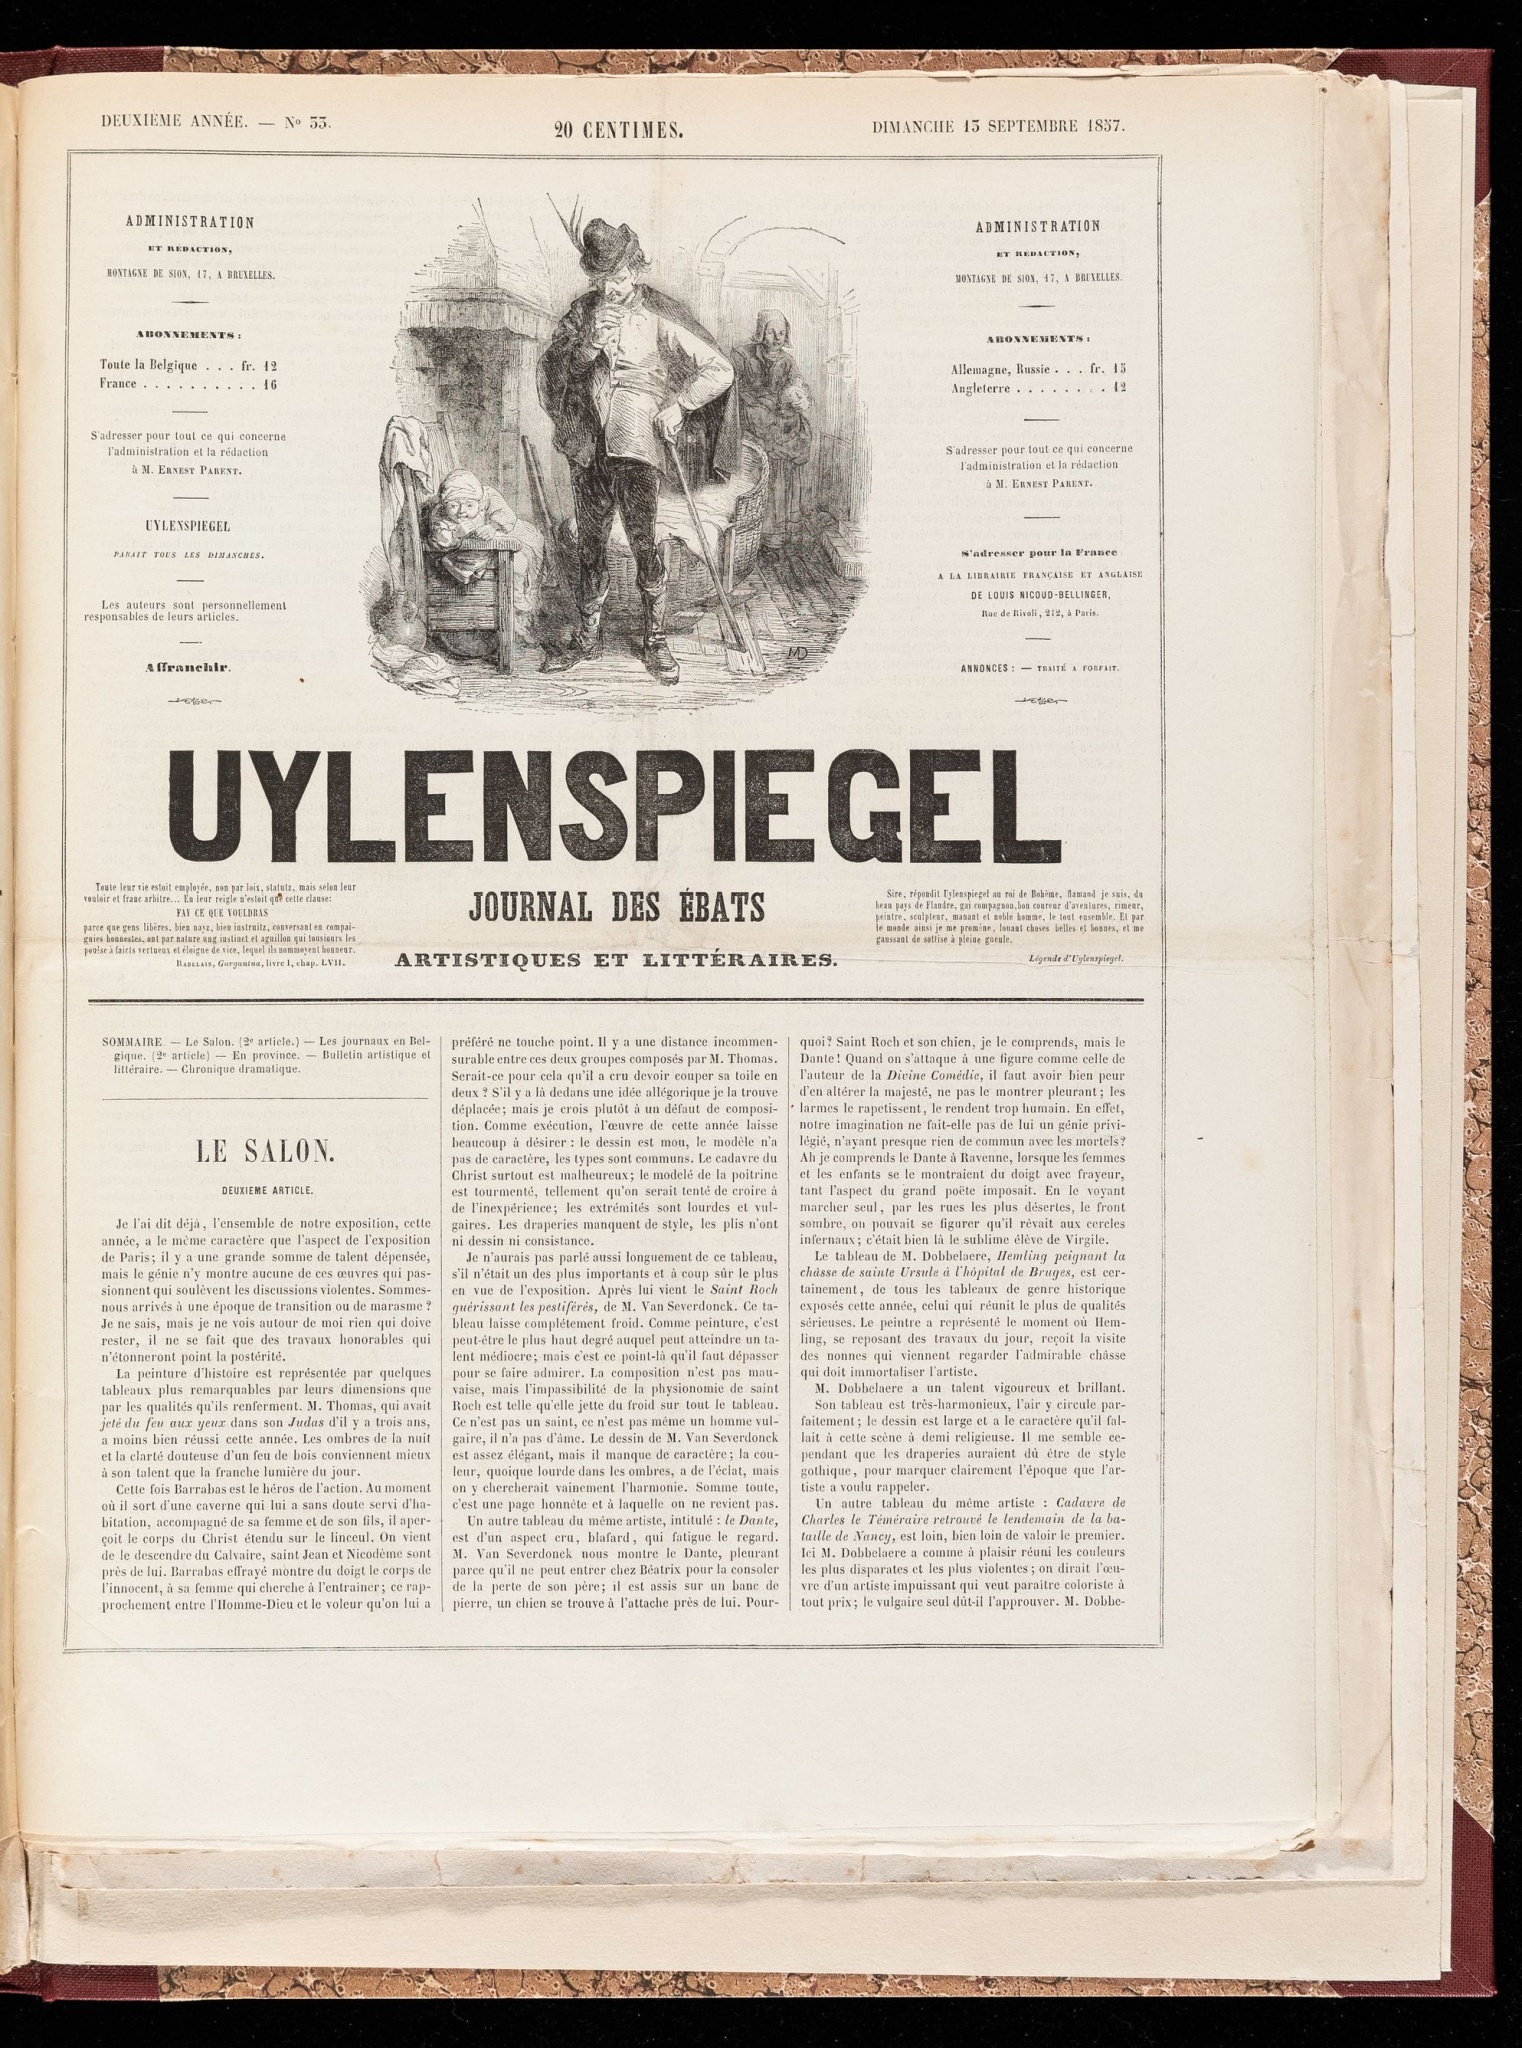 Uylenspiegel, journal des ébats artistiques et littéraires. Deuxième année - N° 33